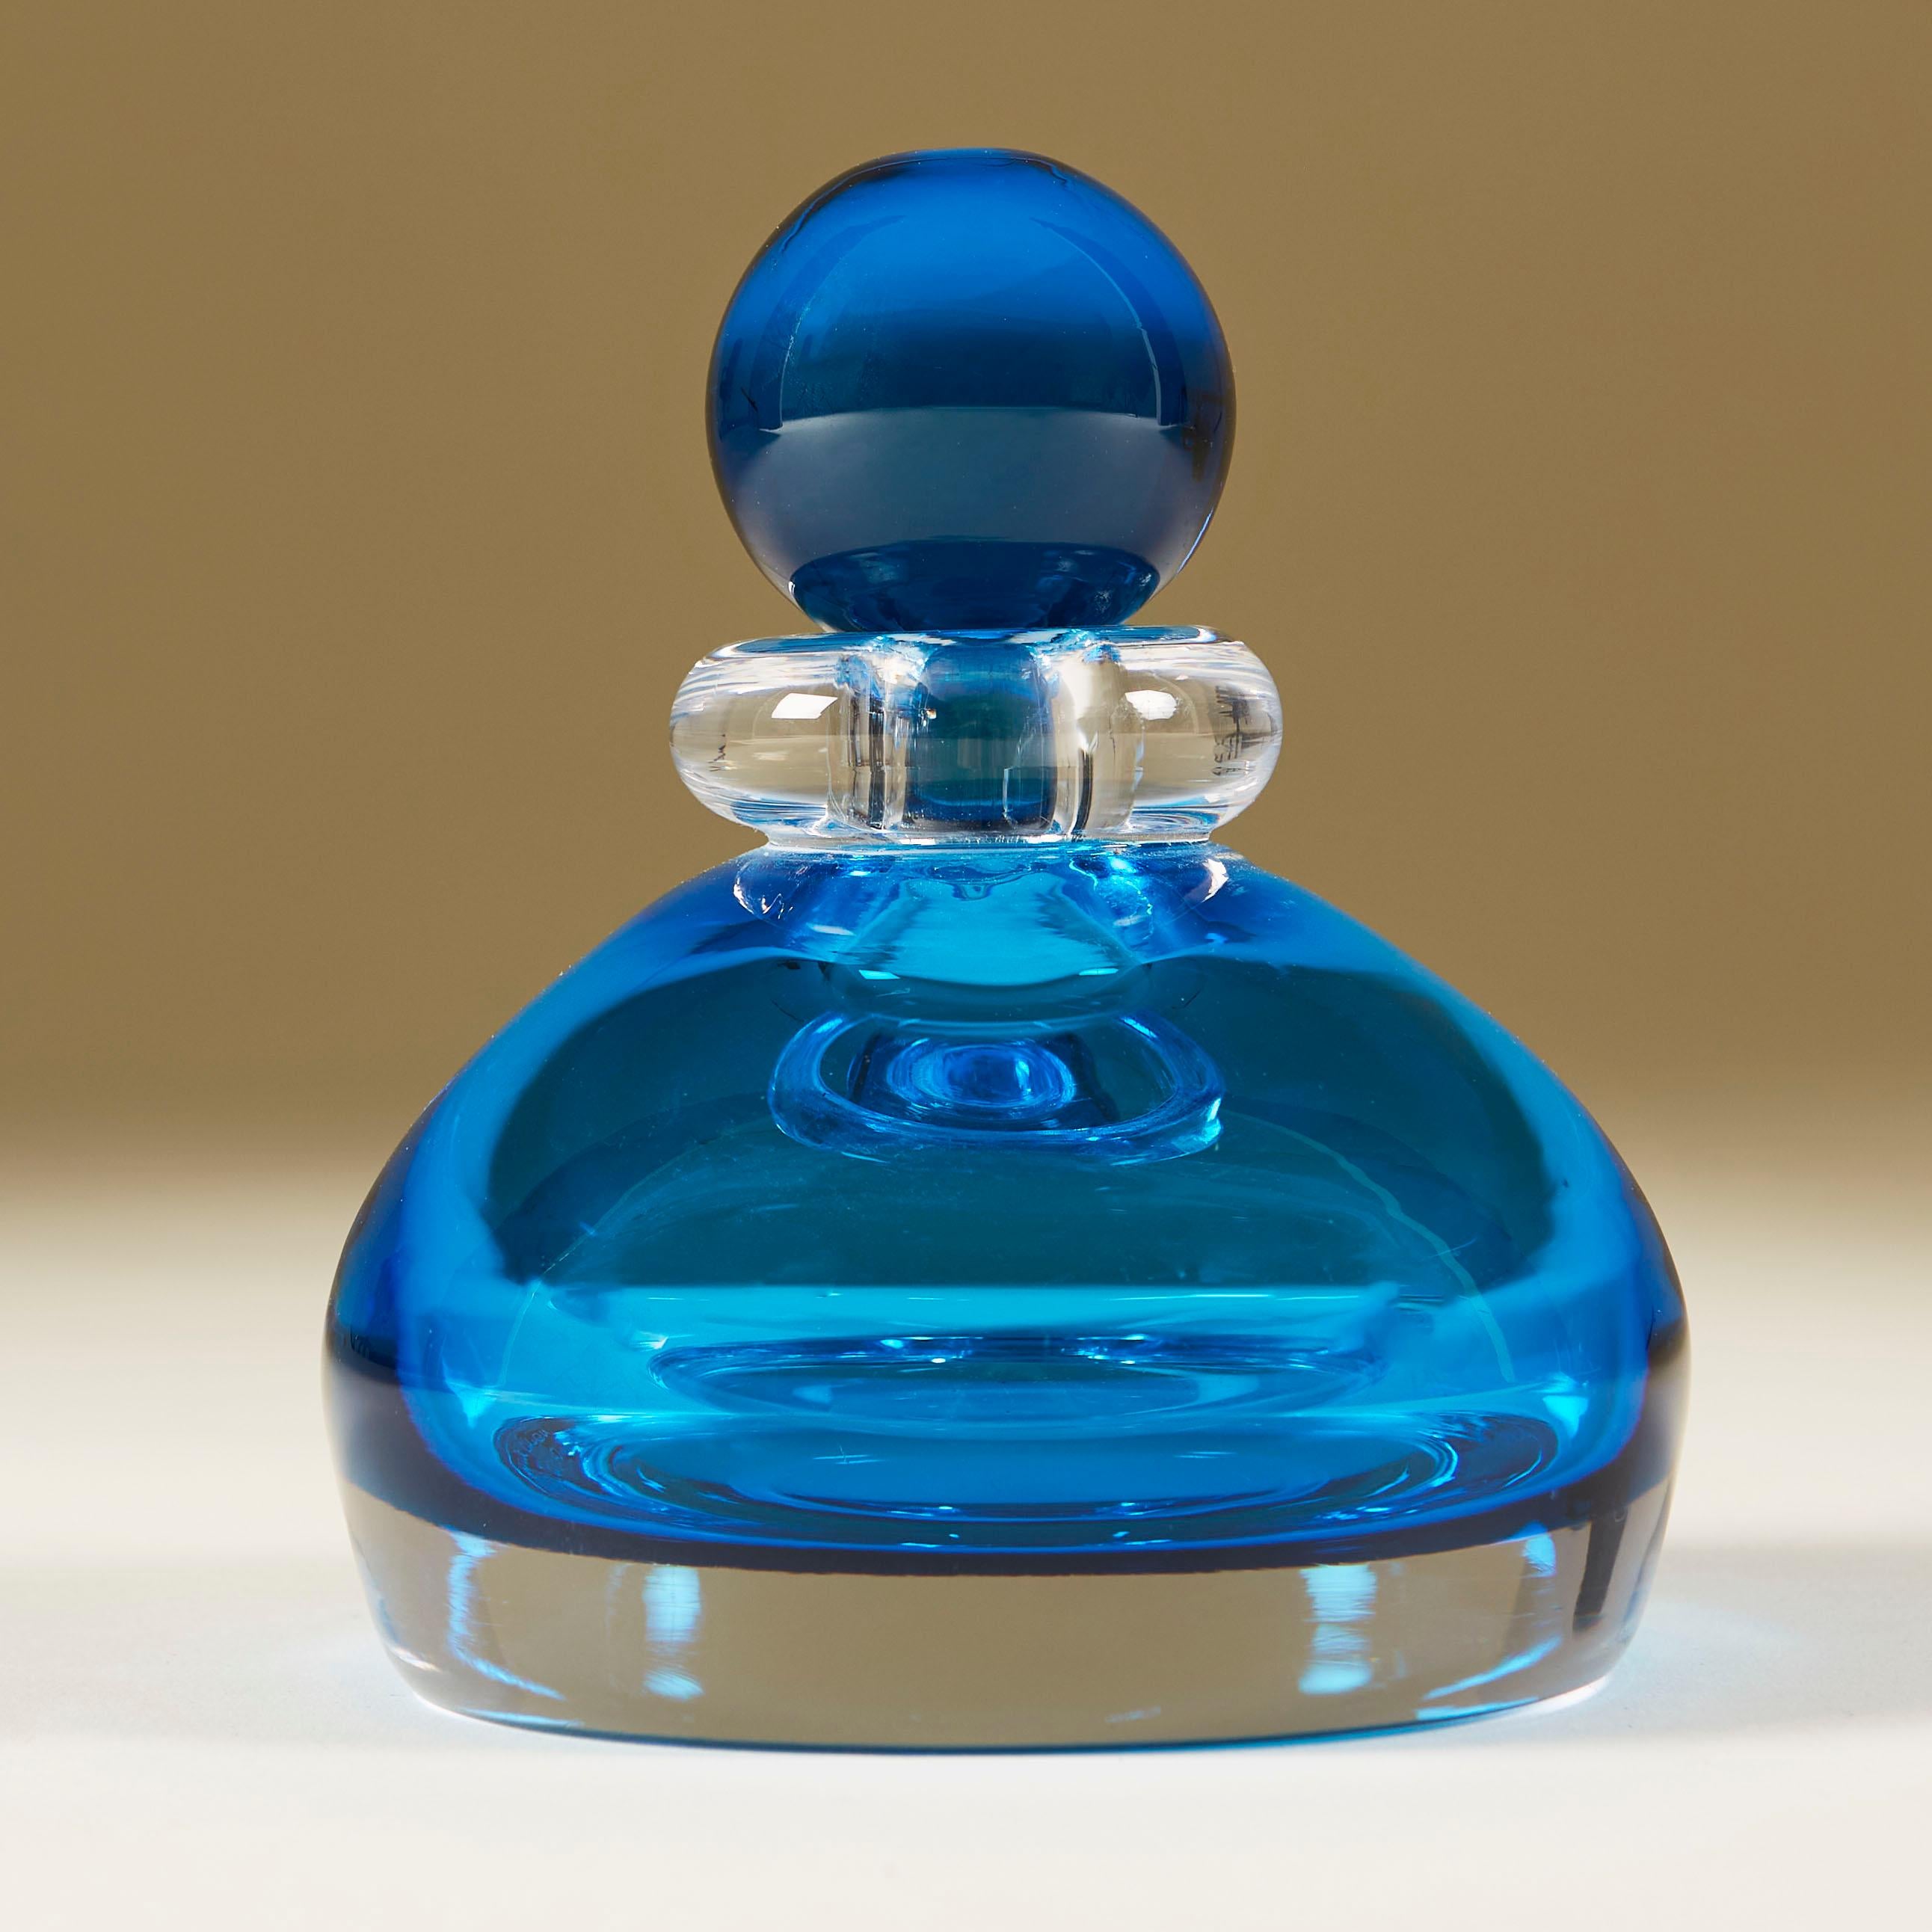 Reichhaltiger aquamarinfarbener Parfümflakon aus klarem Murano-Glas mit klarem Glaskragen und aquamarinfarbenem Kugelstopfen.